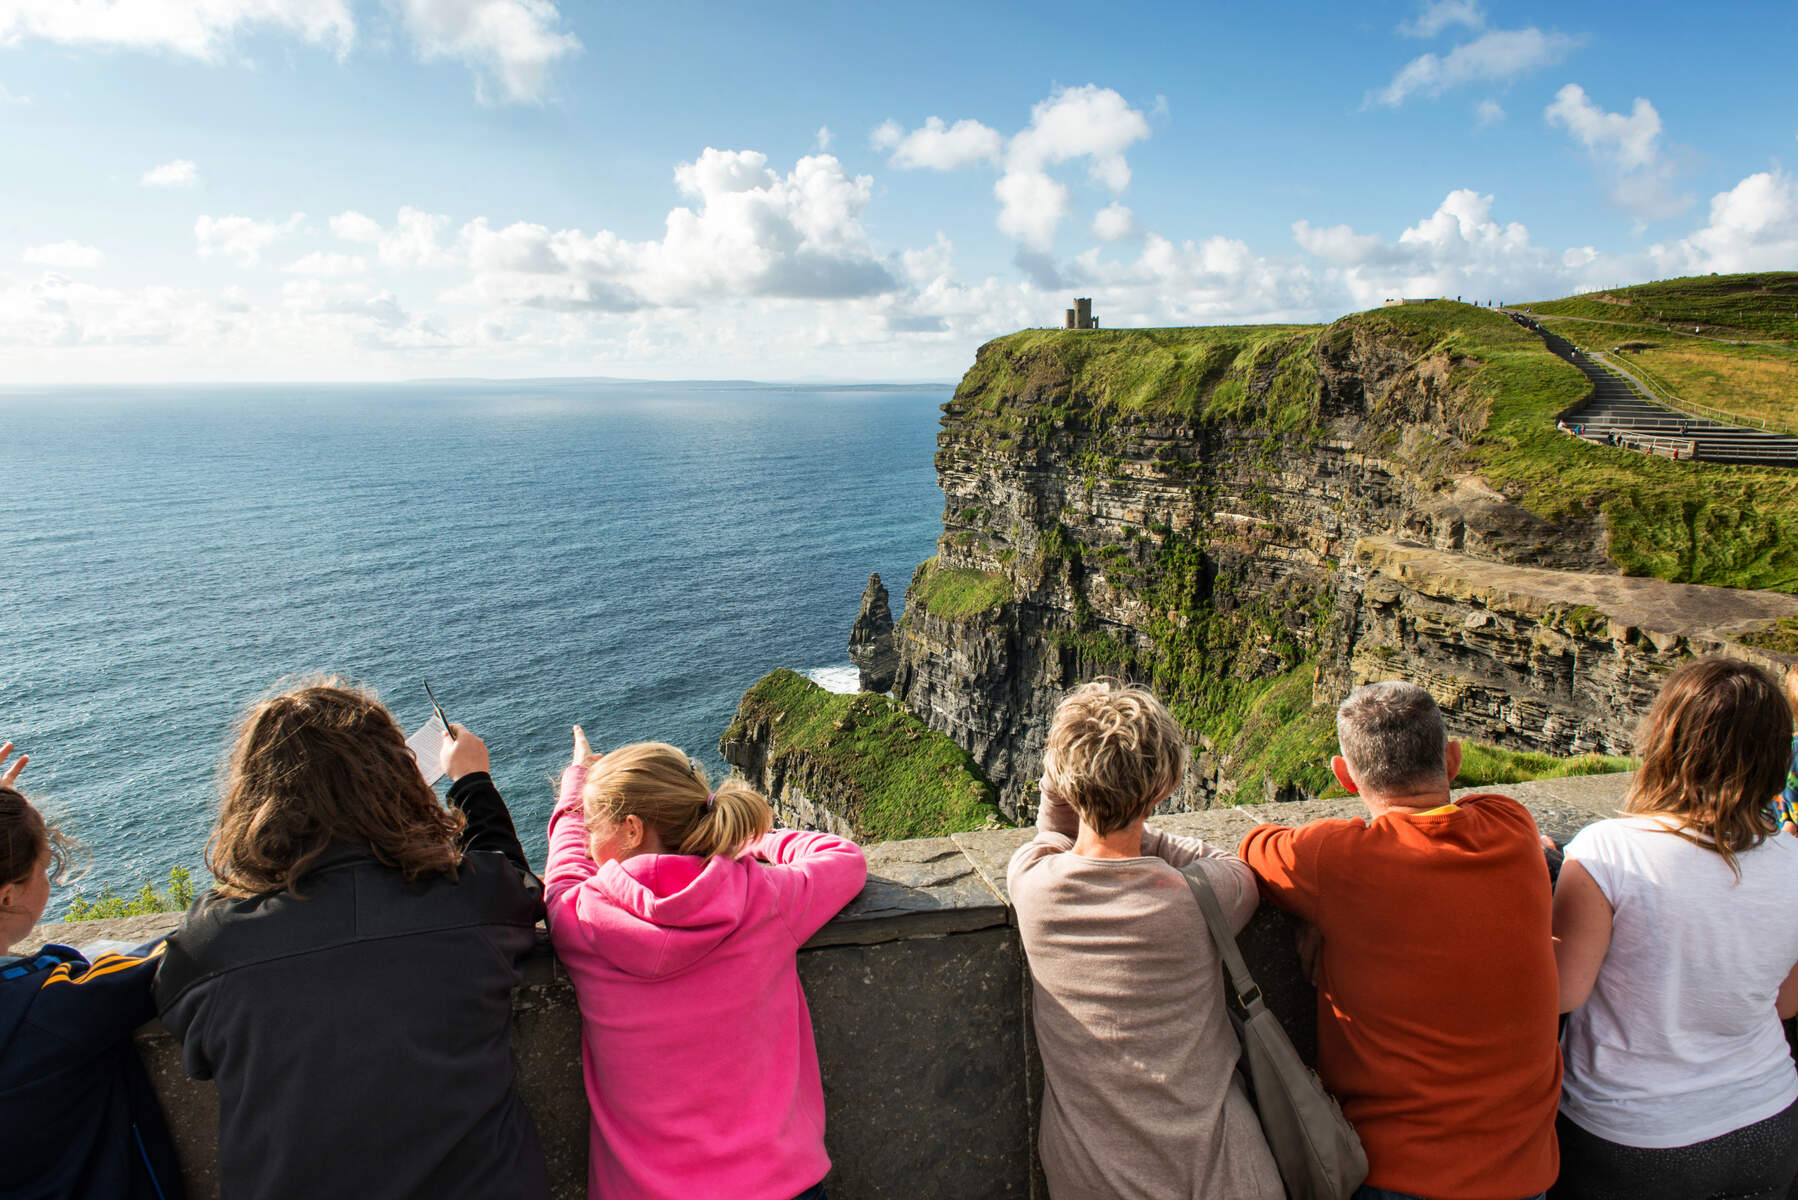 Cliffs of Moher Ierland